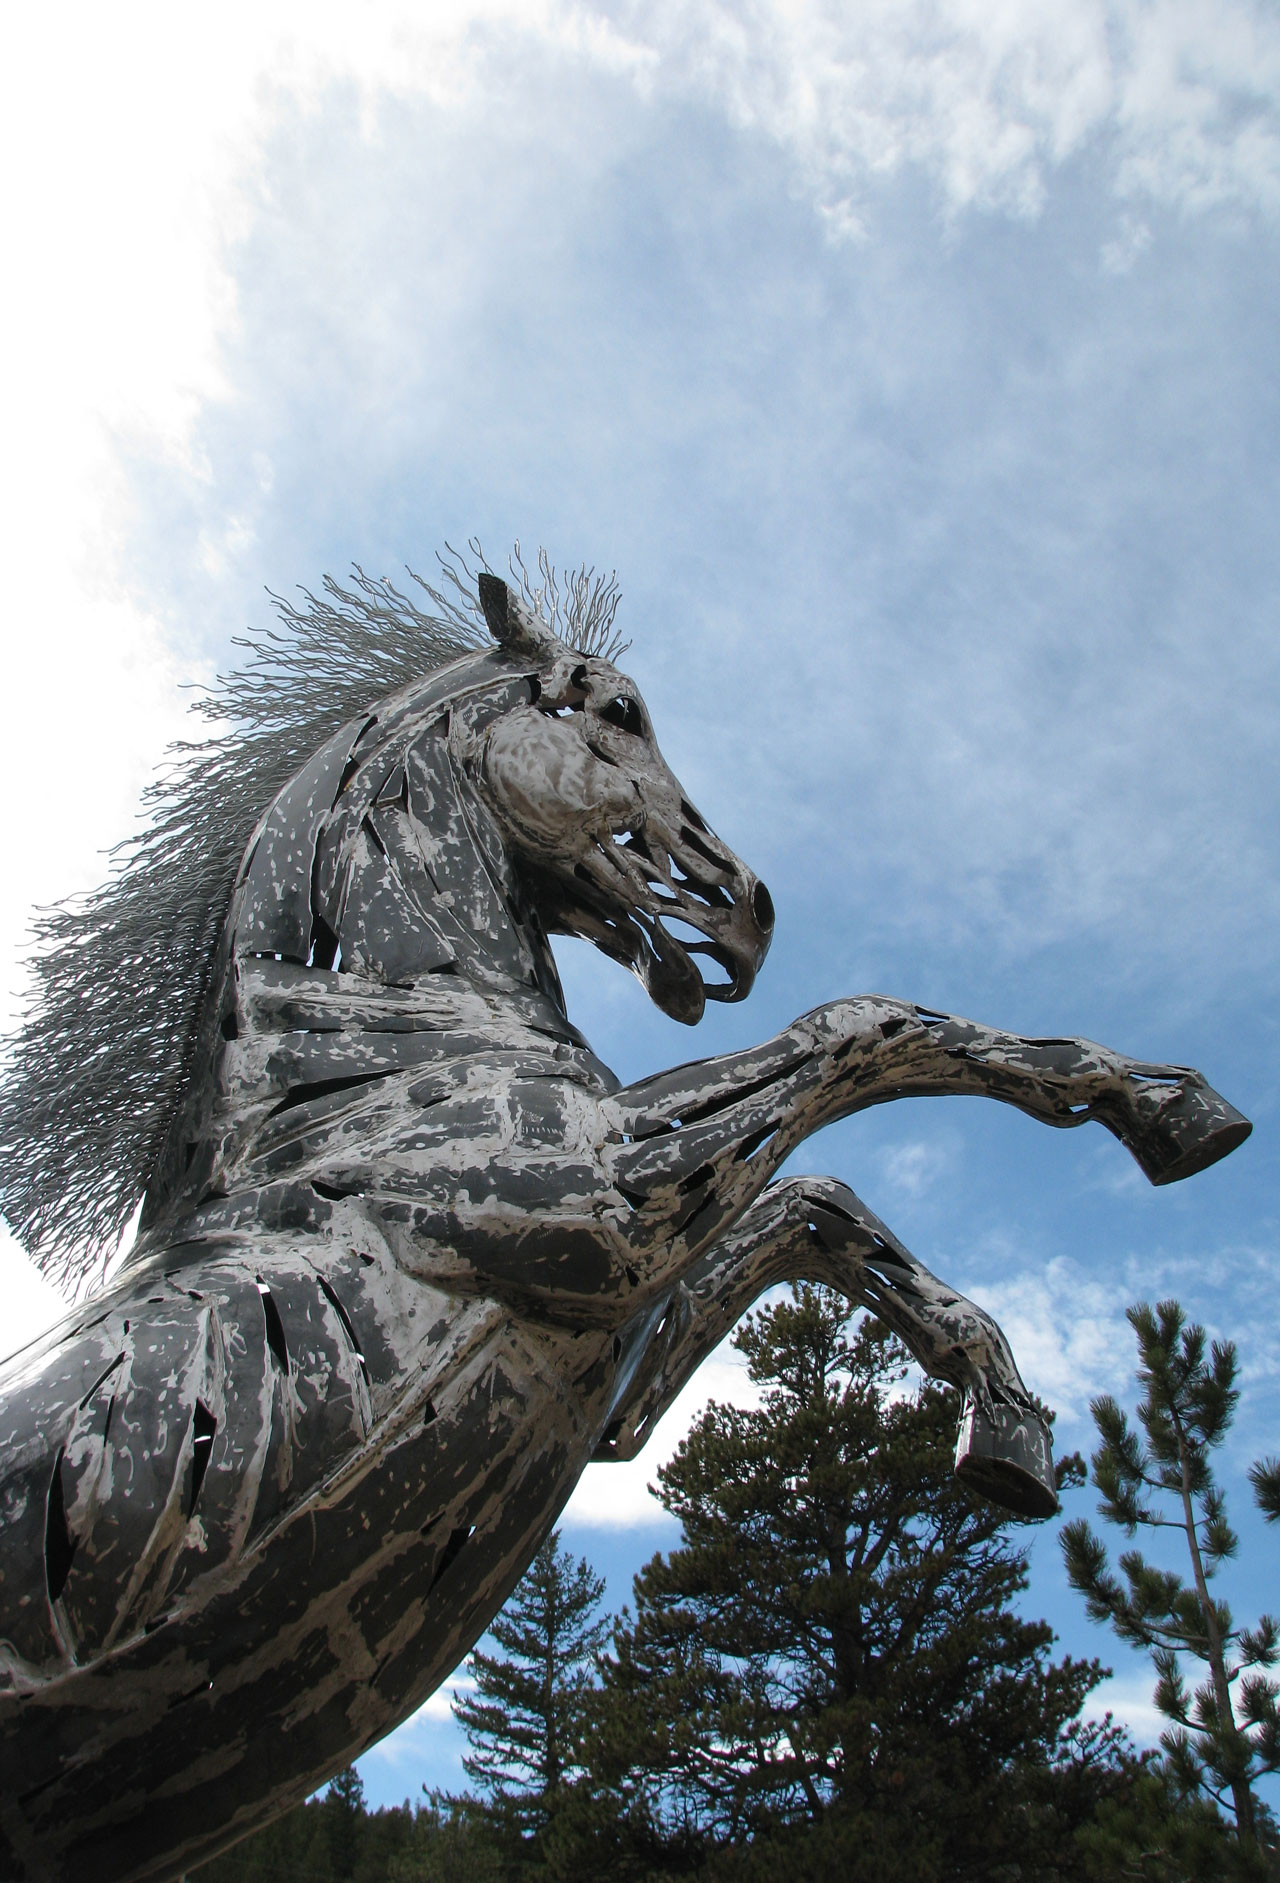 Artist Captures Spirit of the Horse in Steel